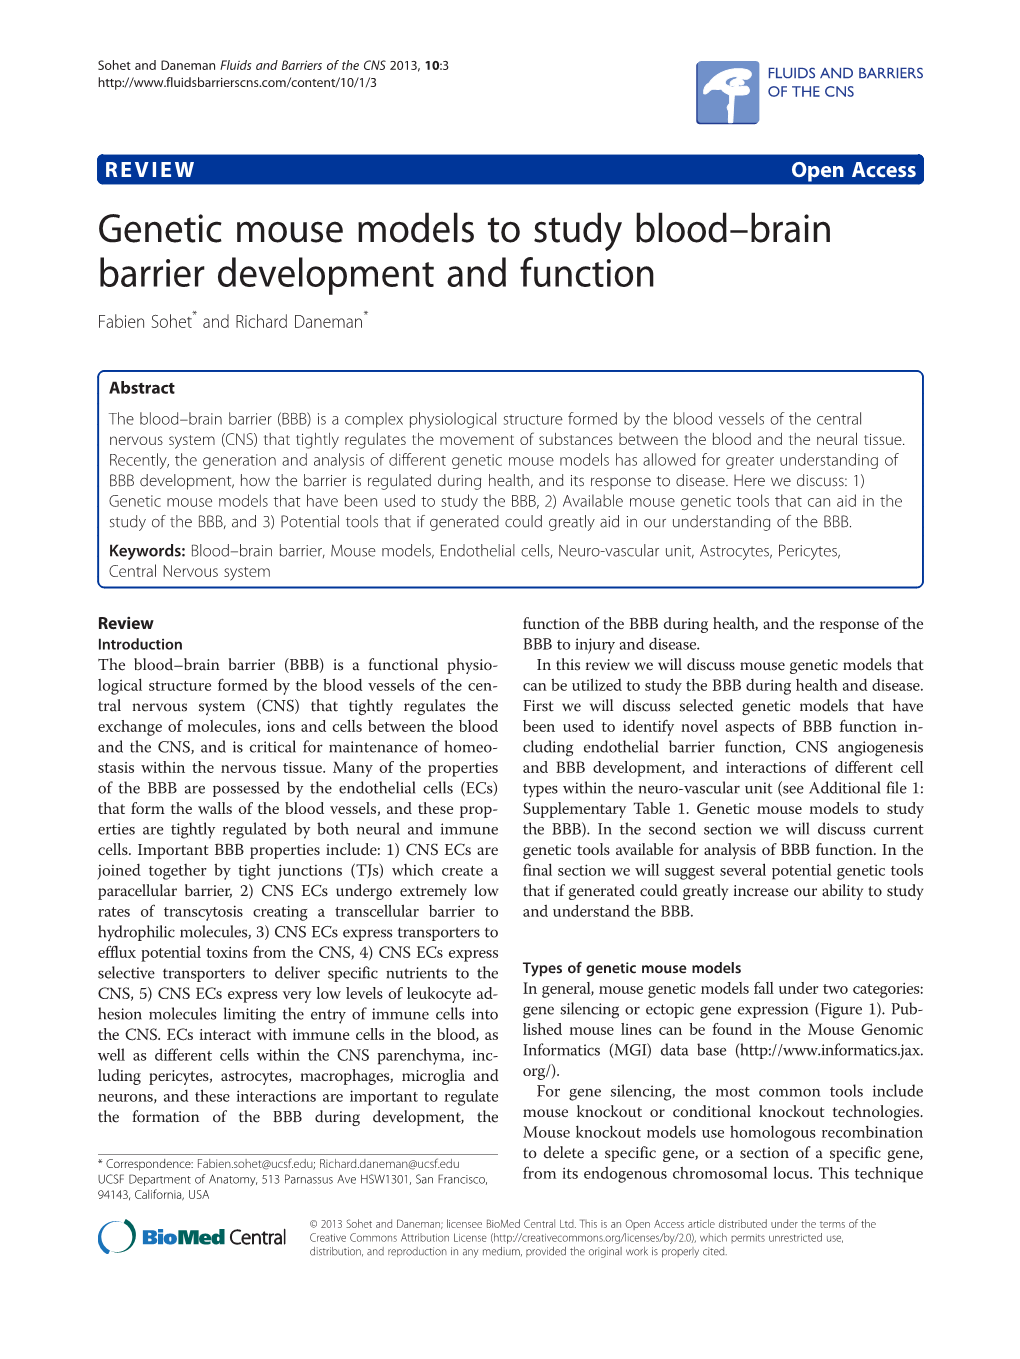 Genetic Mouse Models to Study Bloodłbrain Barrier Development